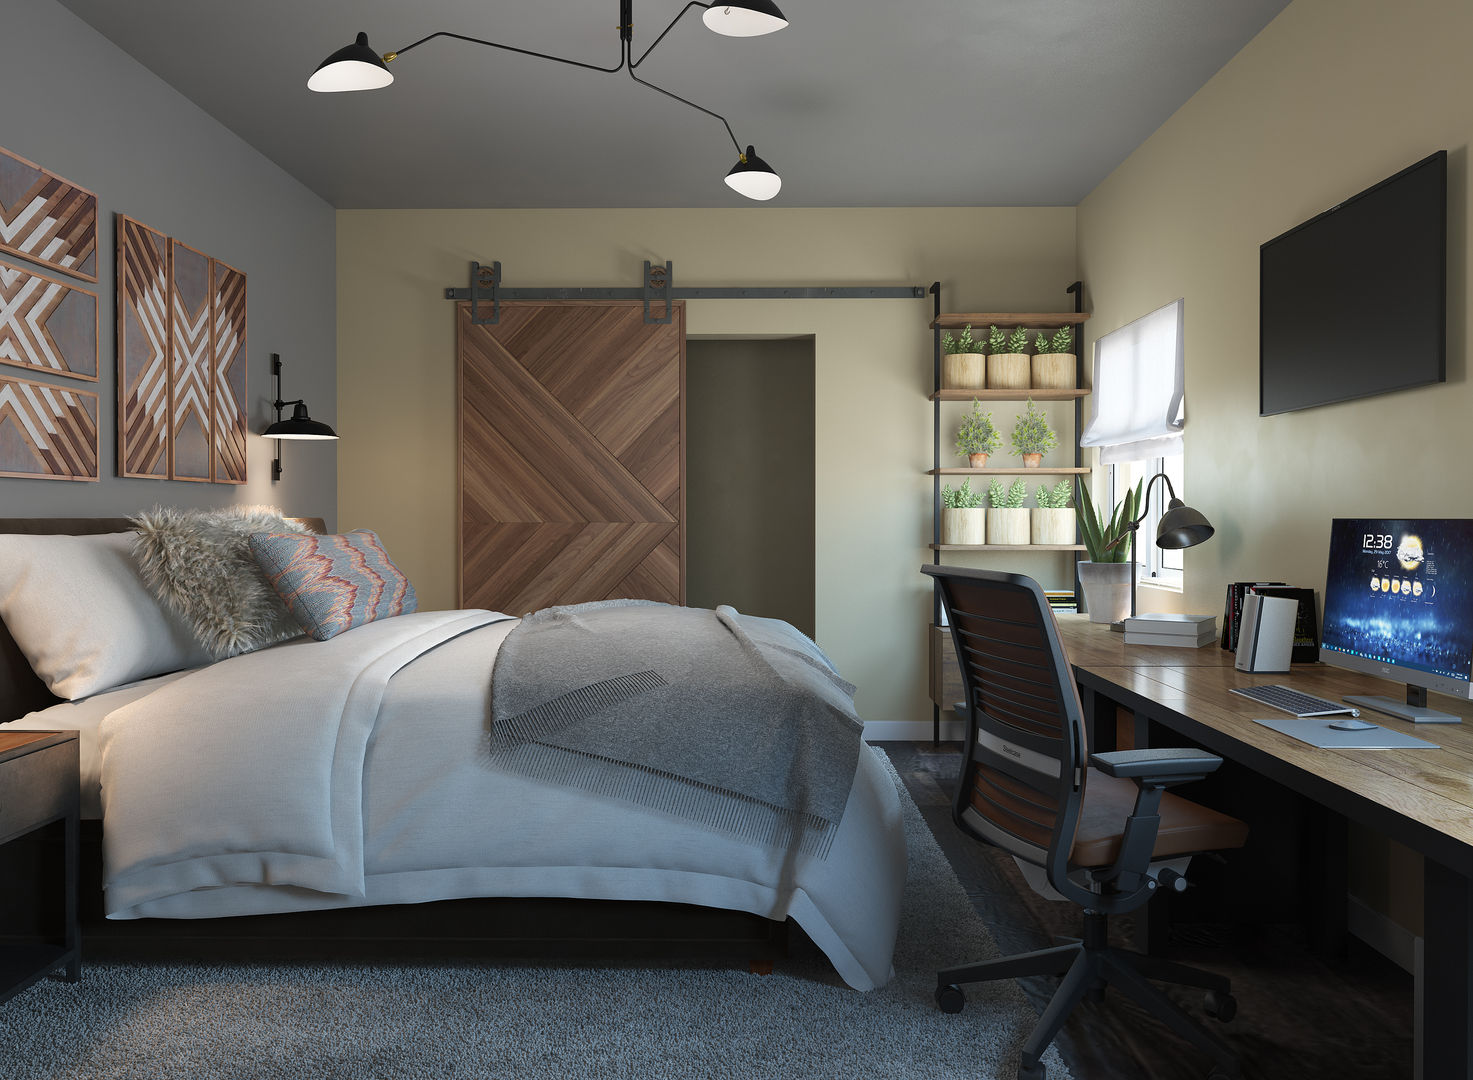 Dormitorio loft Glancing EYE - Modelado y diseño 3D Dormitorios de estilo moderno Modelado 3D de mobiliario, Diseño de Interiores 3D, B2B, B2C, decoración de interiores, personalización de productos, personalización de diseños, estudio 3D, renderización, diseño dormitorio, interiorismo, diseño 3D,